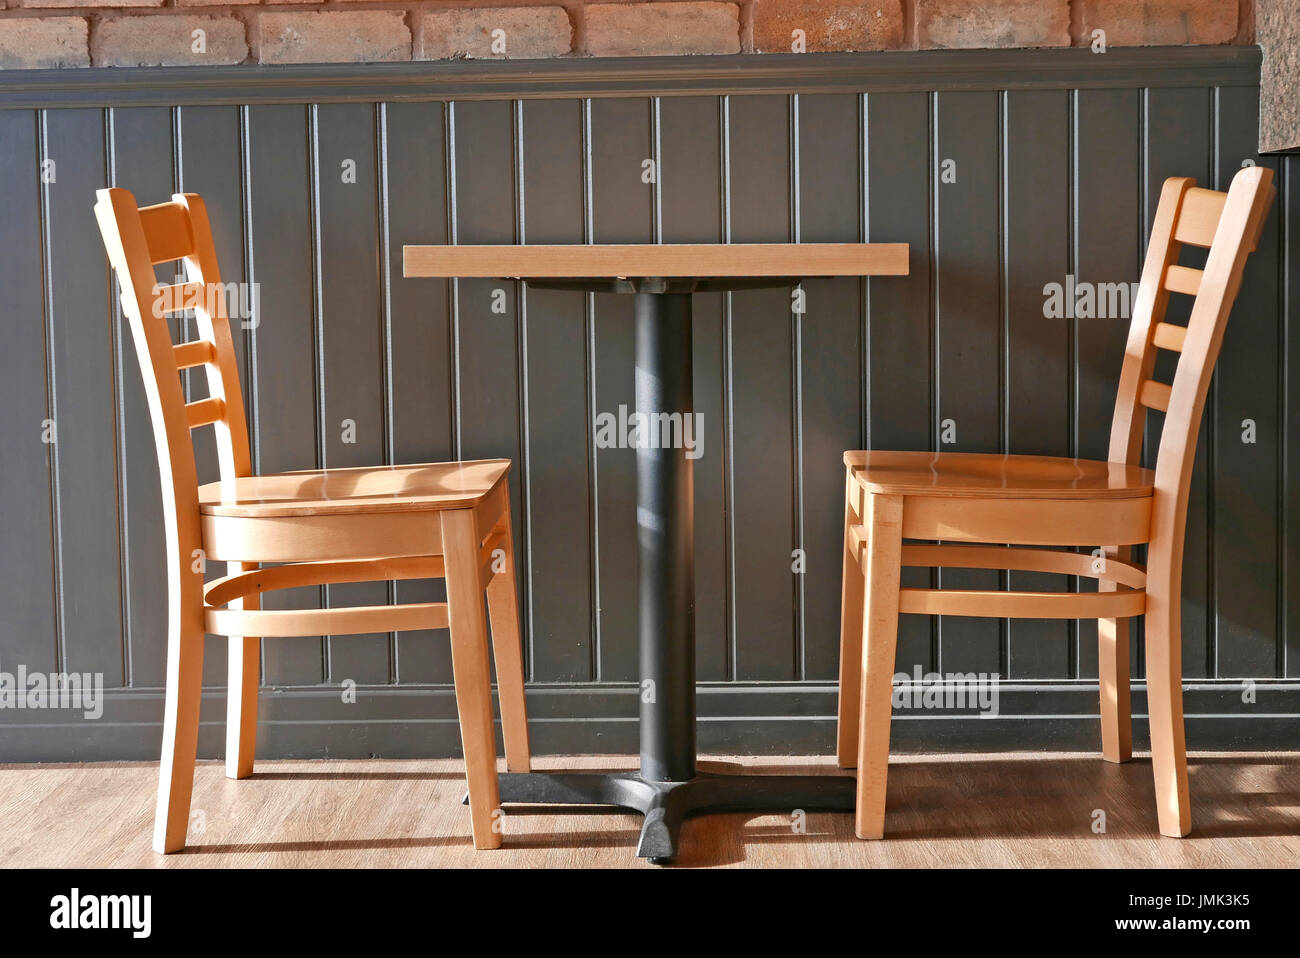 Table éclairée sur le côté et deux chaises en bois de couleur claire contre les murs lambrissés Banque D'Images